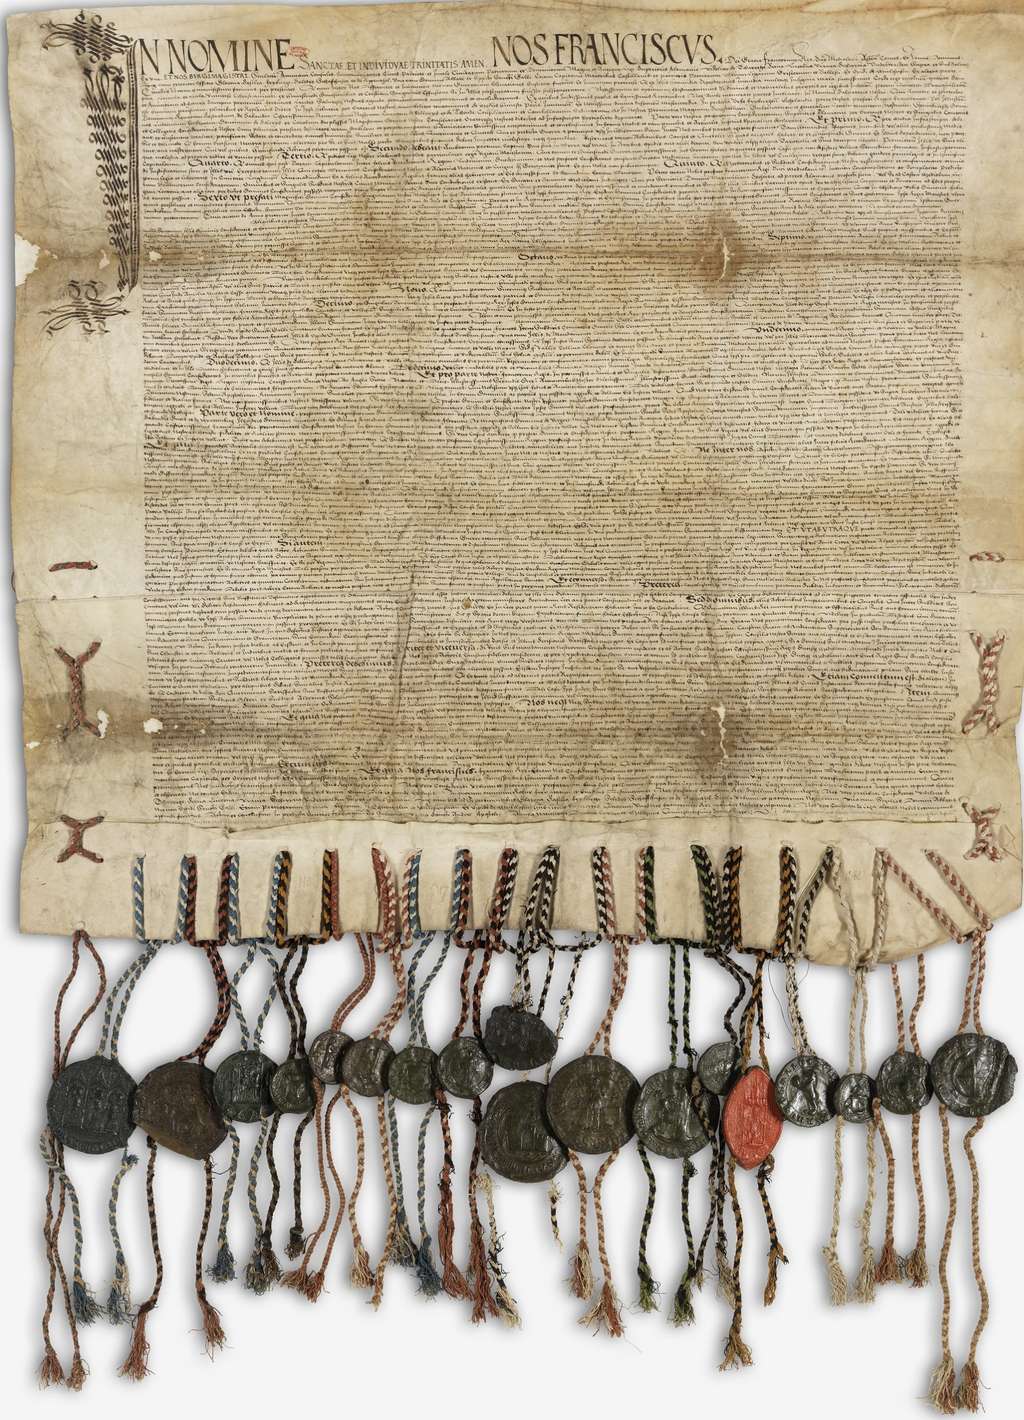 Traité de Paix perpétuelle de Fribourg, signé en 1516 entre les treize cantons suisses et le roi de France. Exemplaire en latin conservé aux Archives nationales de France. © <em>Wikimedia Commons</em>, domaine public